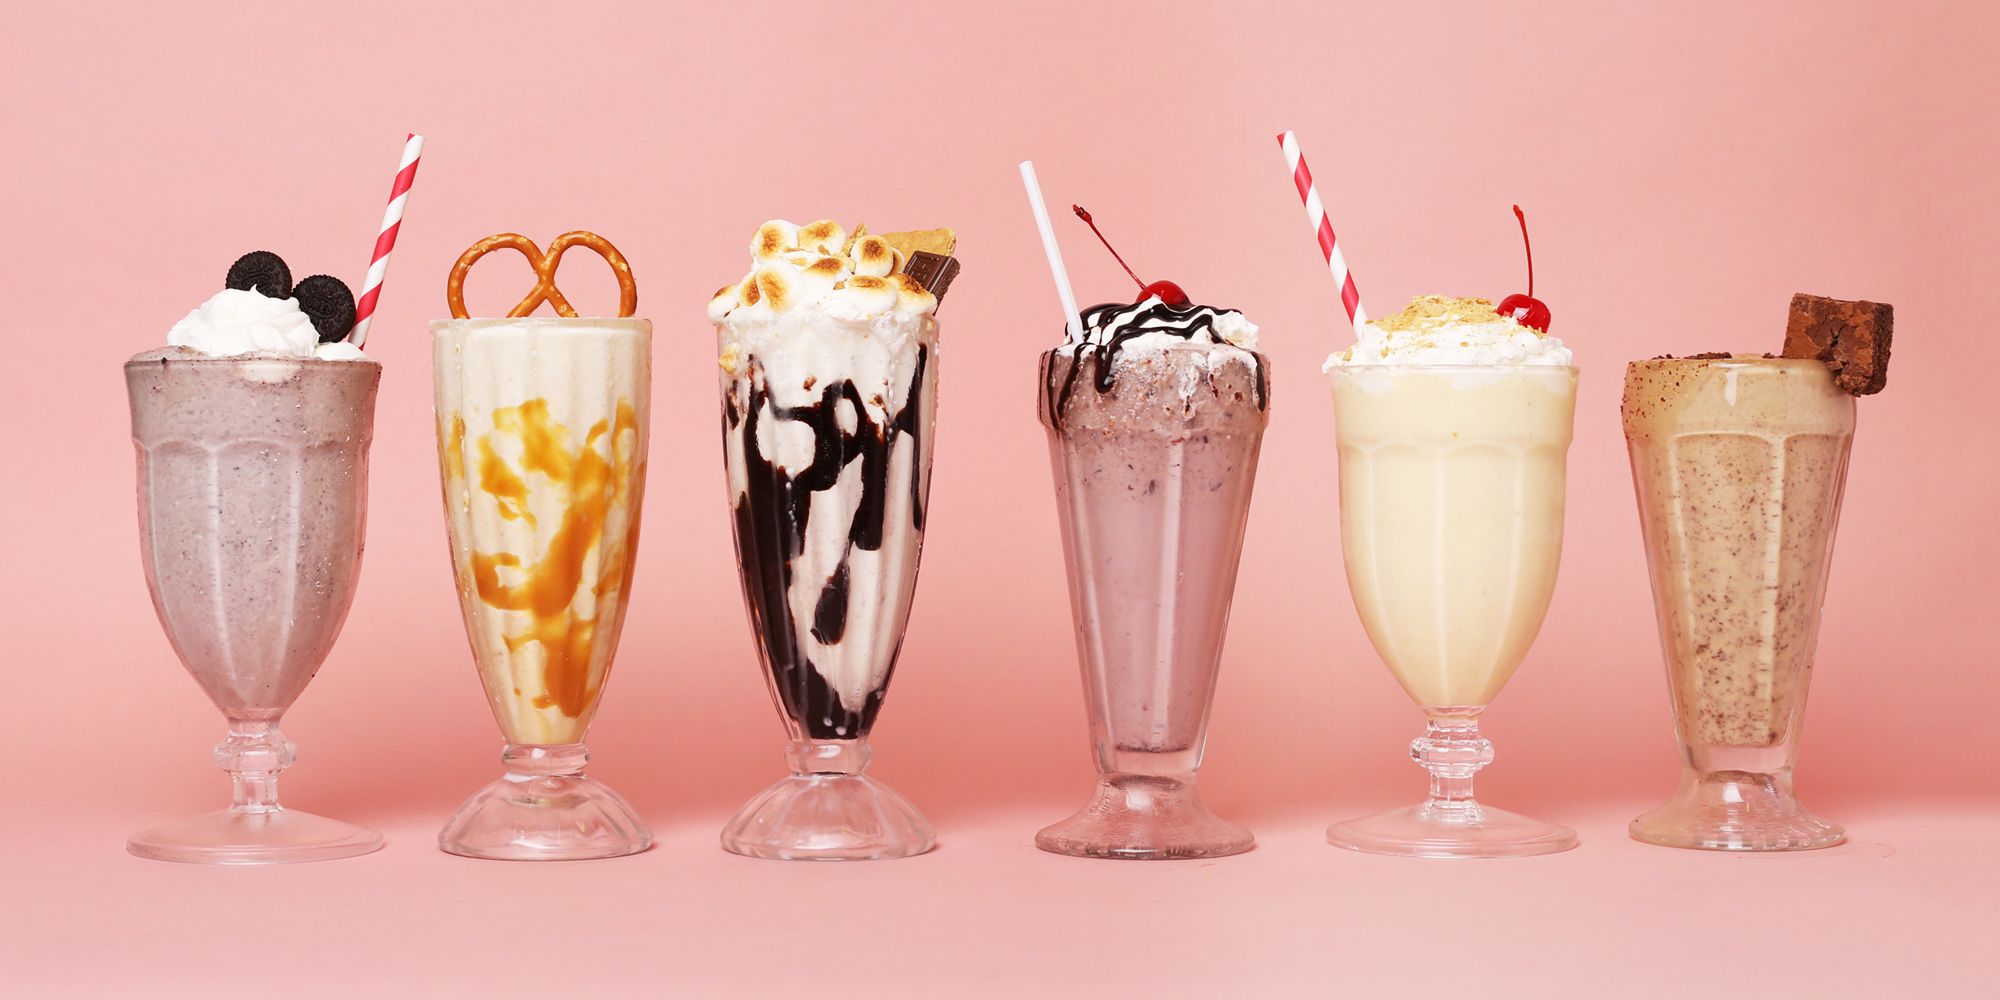 20+ Best Milkshake Recipes - How to Make a Homemade Milkshake